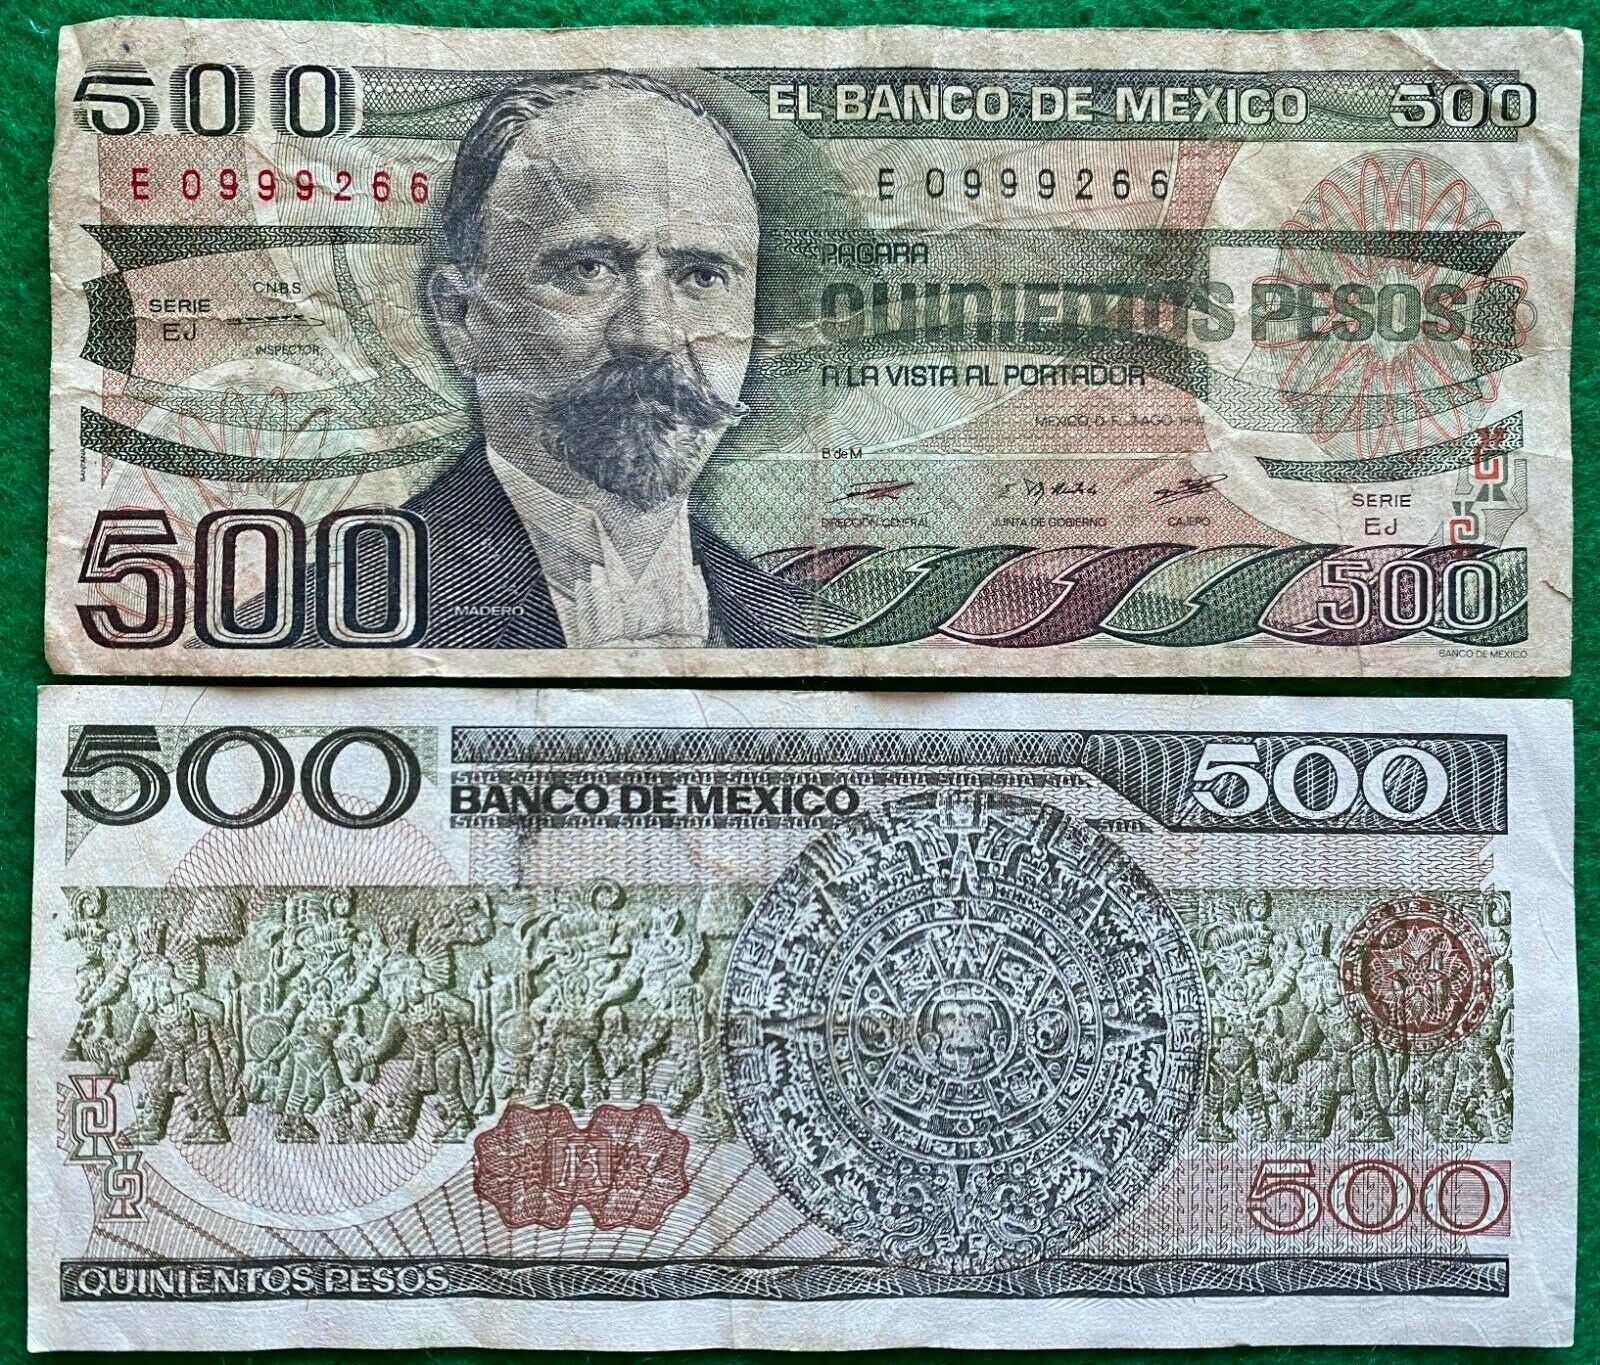 Mexico Banknote Circulated 1984 Francisco I. Madero Bdm Bill 500 Pesos Note